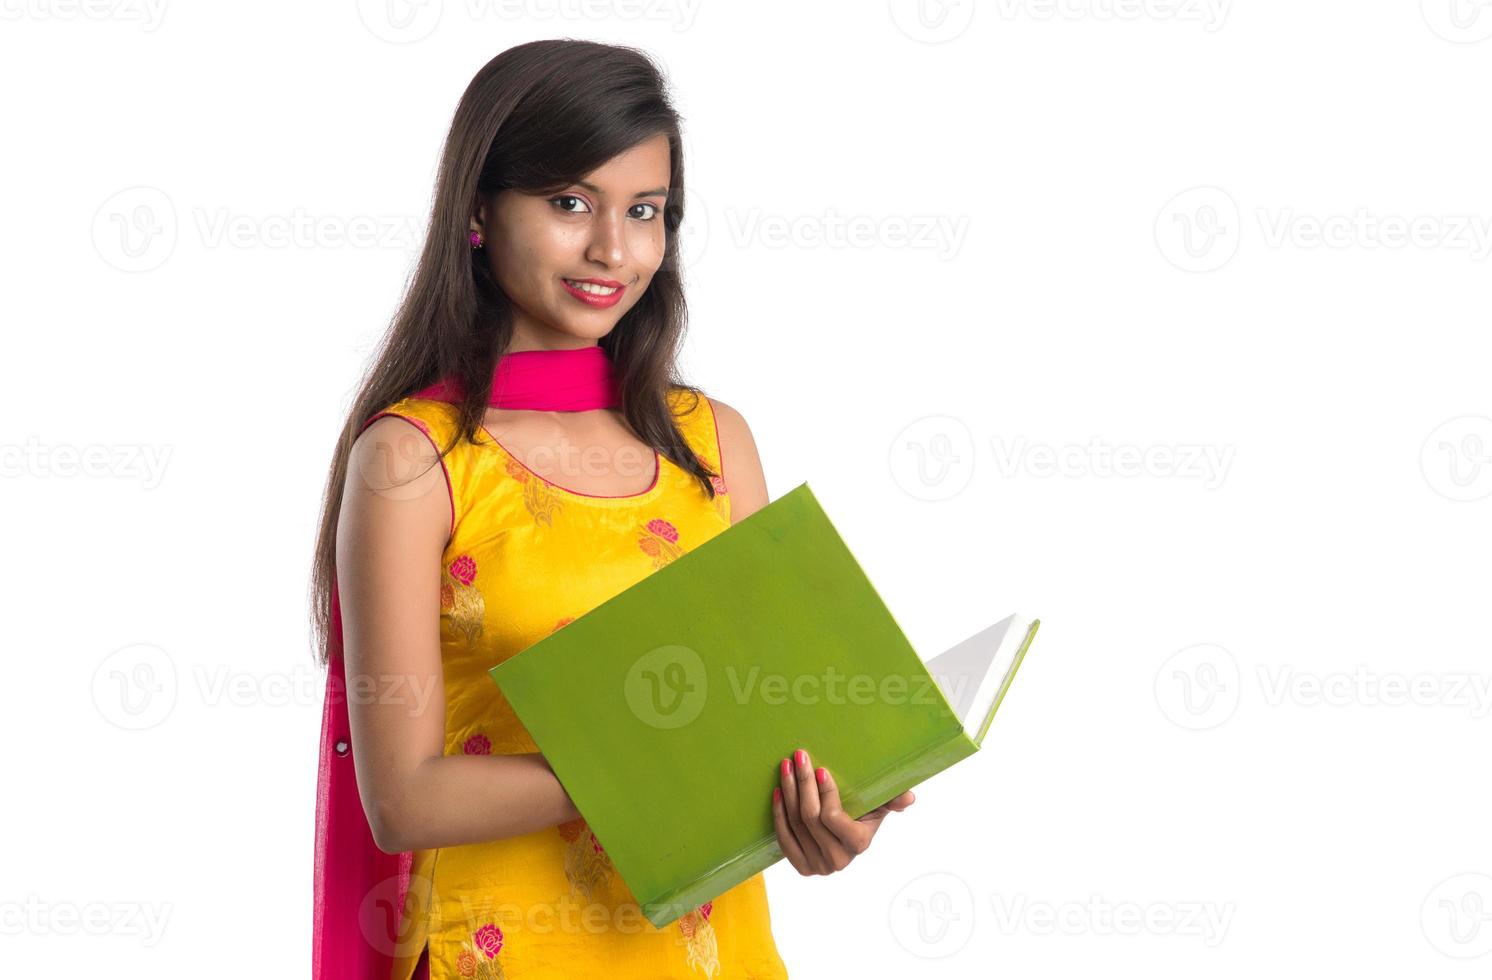 mooi jong meisje boek te houden en poseren op een witte achtergrond foto